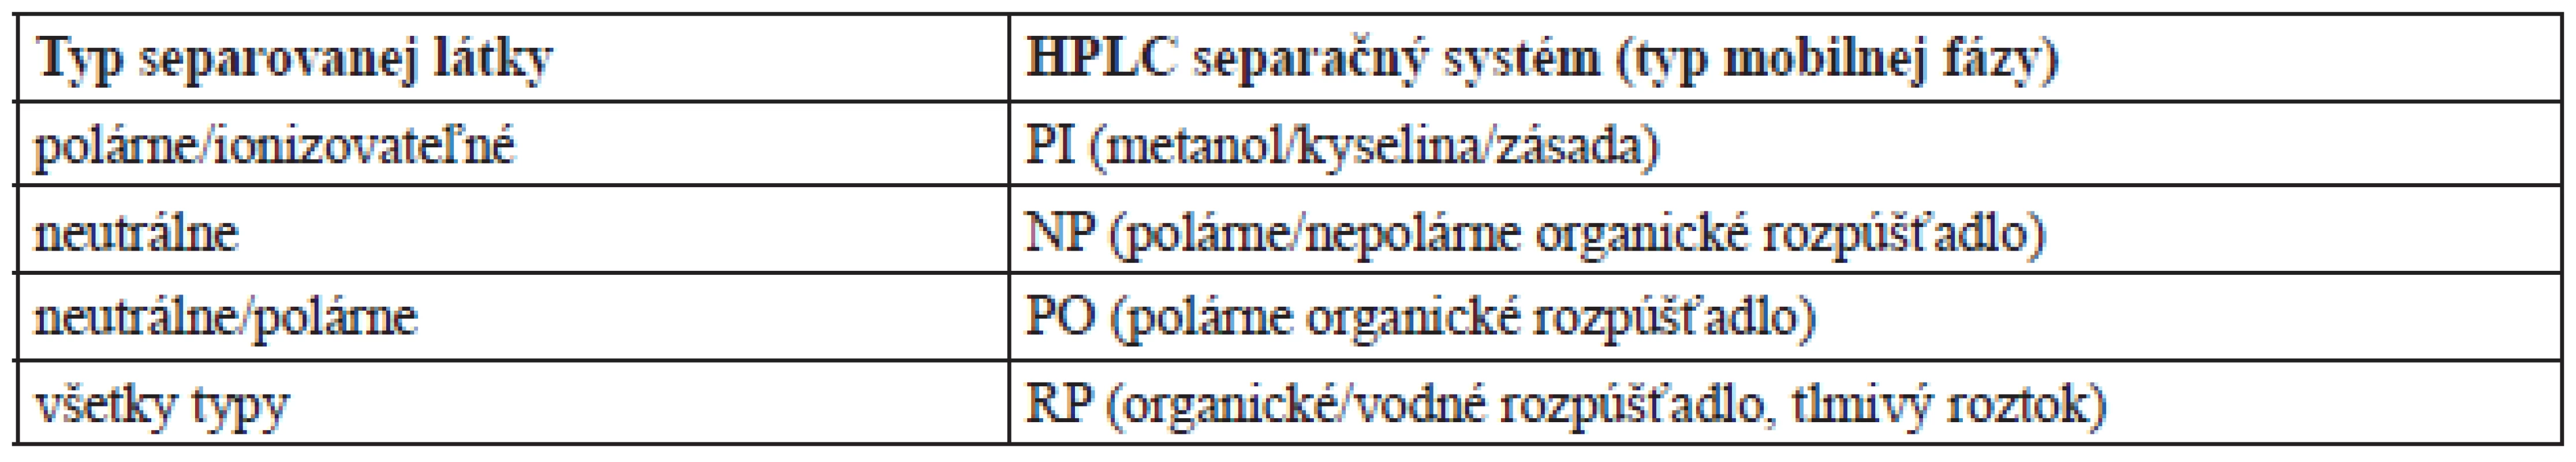 Aplikovateľnosť chirálnych stacionárnych fáz na základe teikoplanínu pre HPLC separáciu enantiomérov rôznych typov látok<sup>7, 11, 12 )</sup>